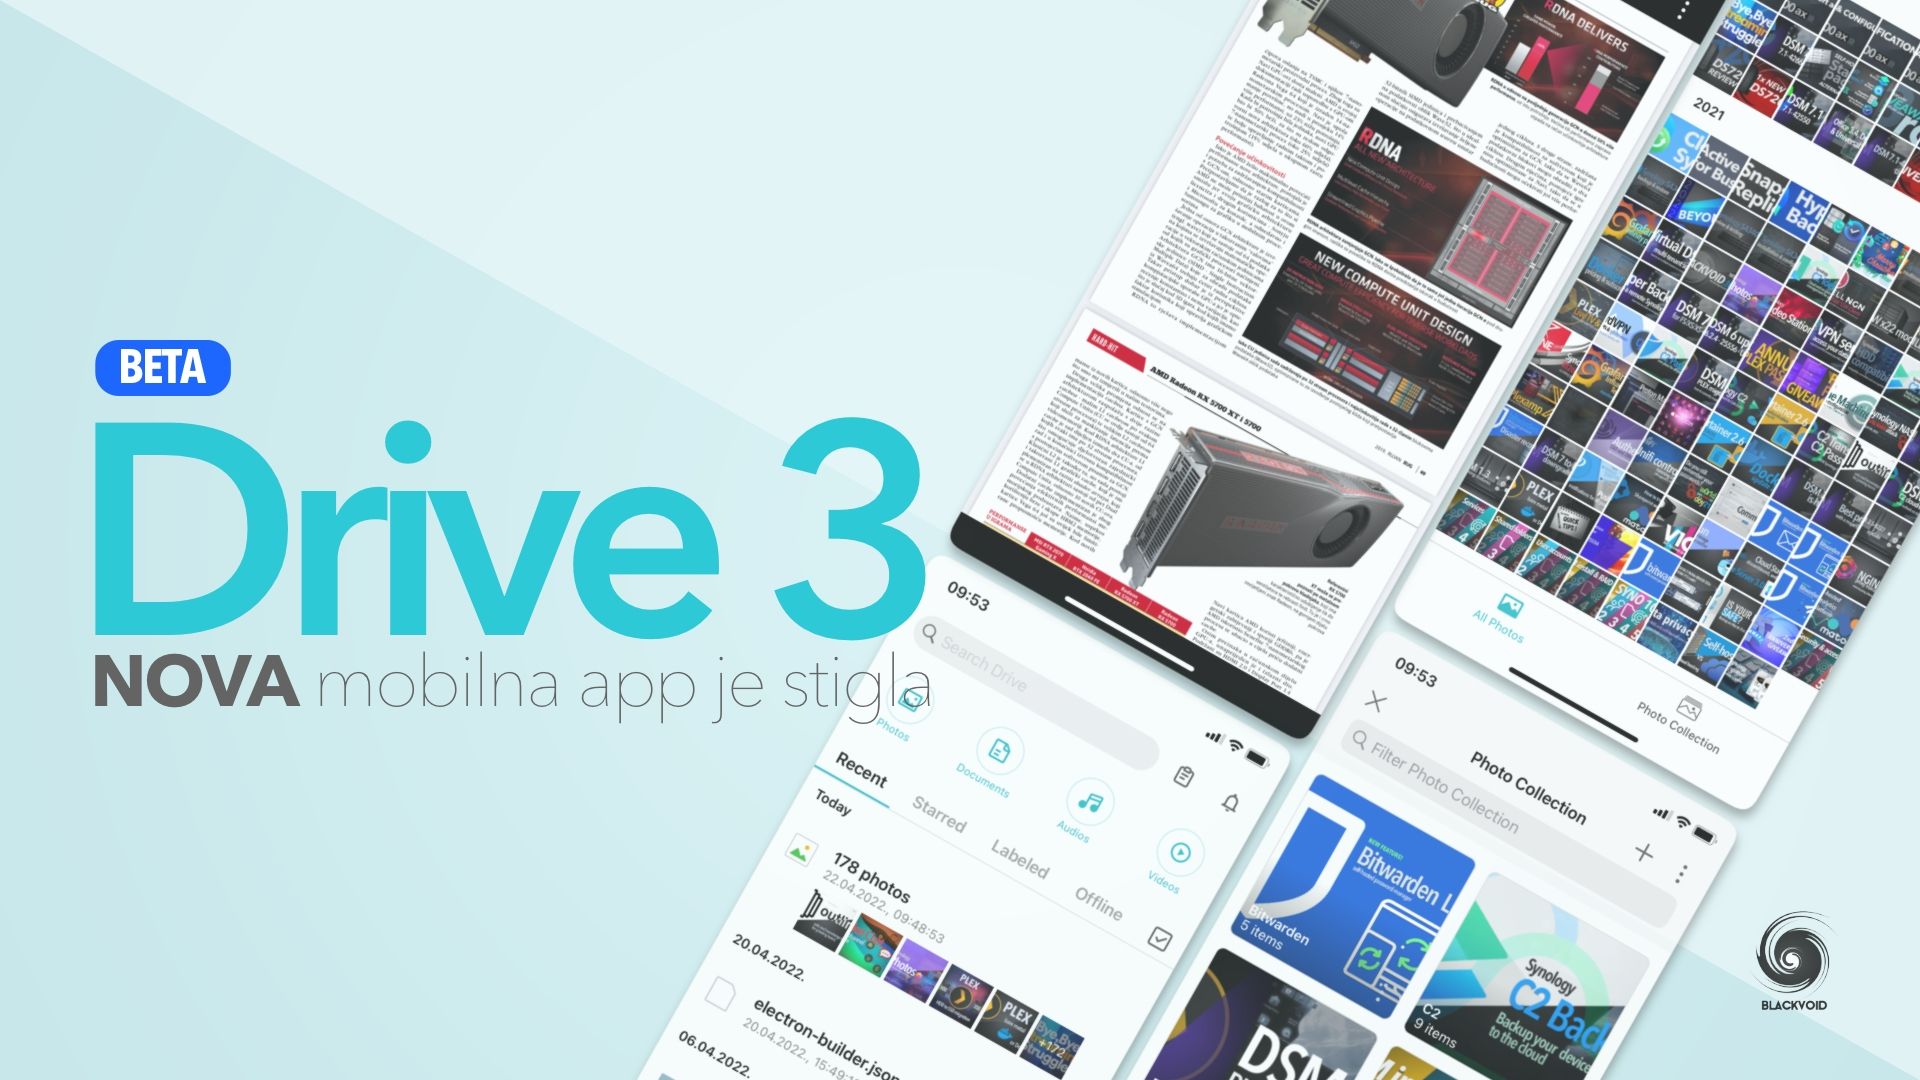 Drive 3.0 - nova mobilna aplikacija je stigla